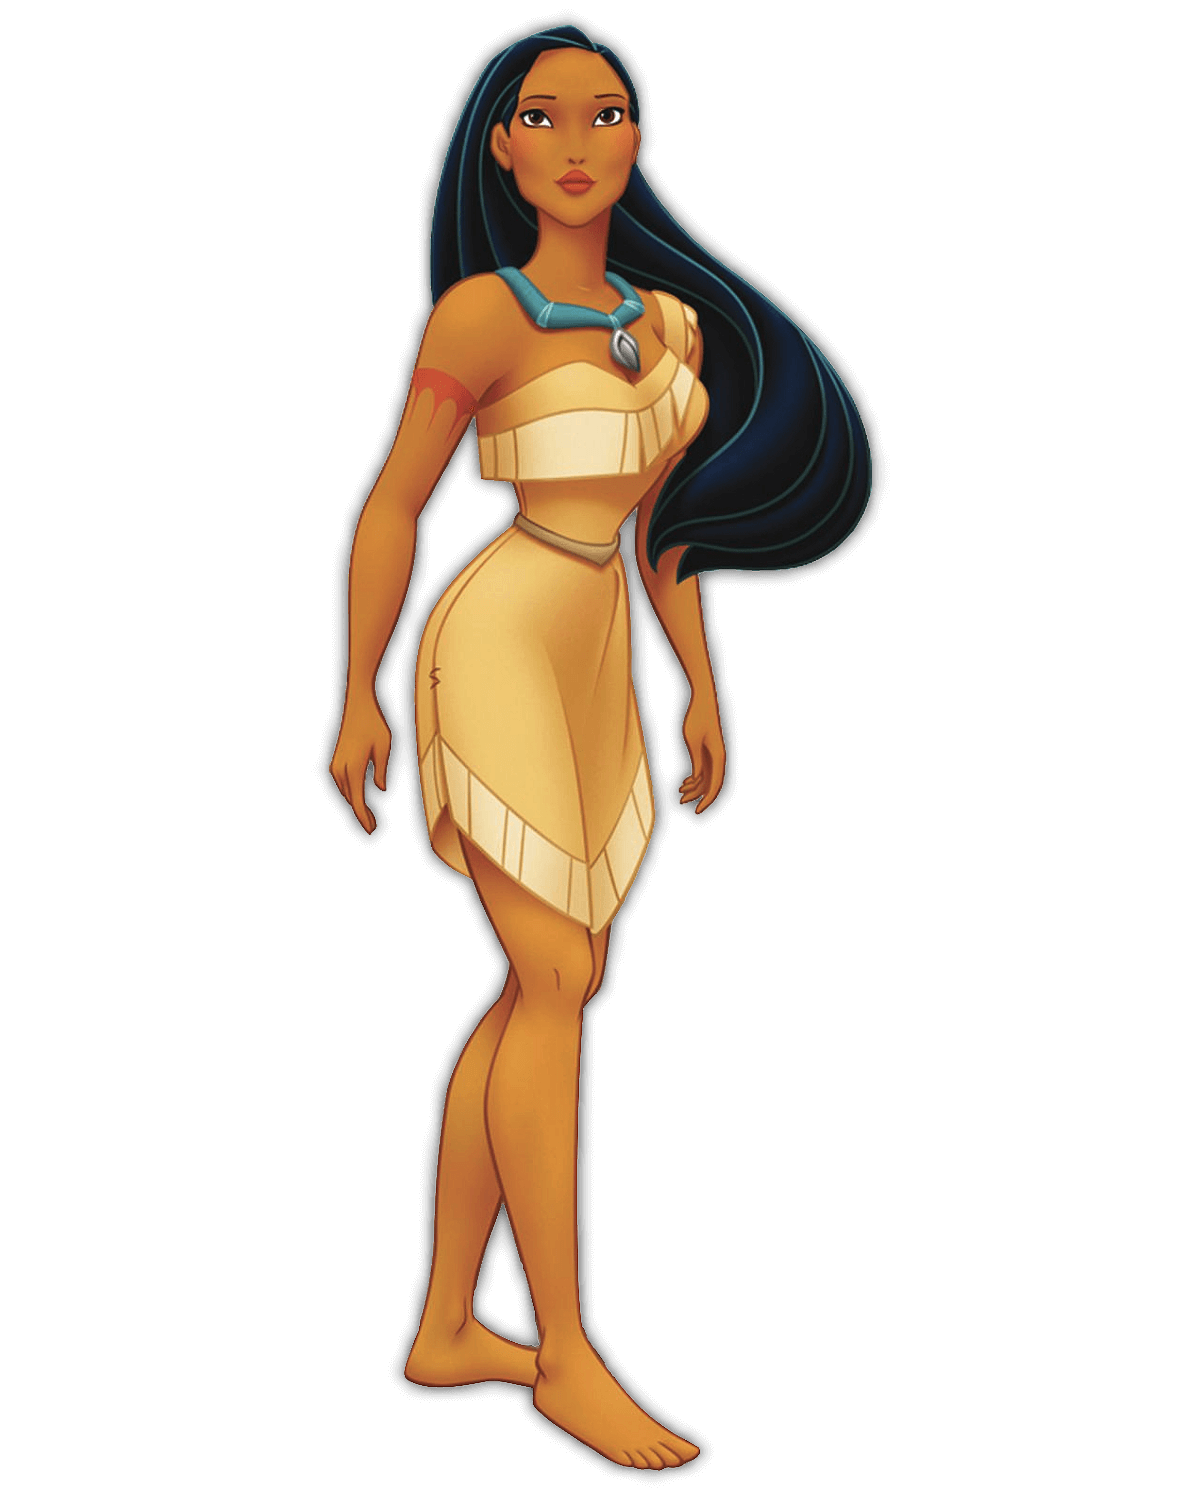 Disney Prinzessin Pocahontas. Sie trägt ihre Stammeskleidung: ein hellbraunes, kurzes Kleid mit Fransen und eine blaue Halskette